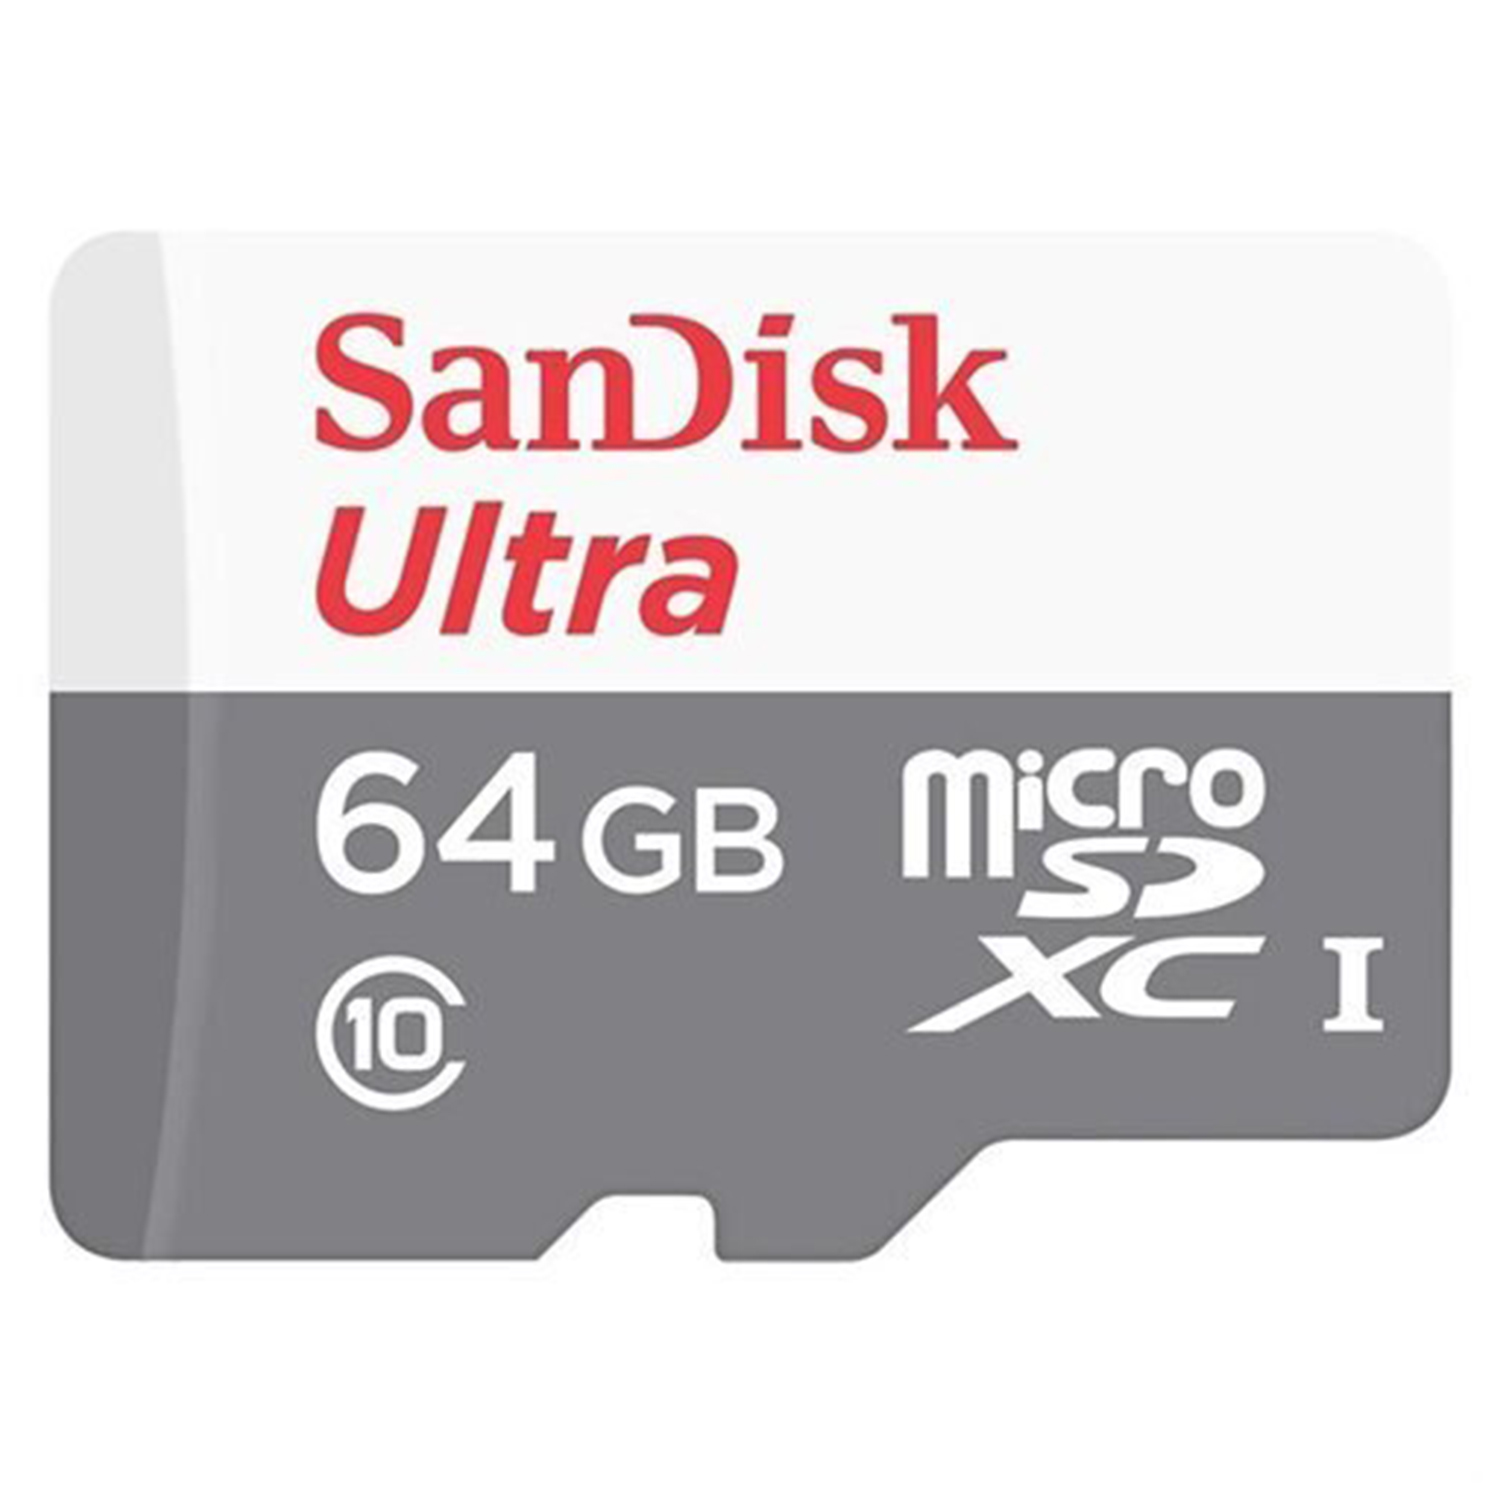  کارت حافظه microSDXC سن دیسک مدل A1 کلاس 10 استاندارد UHS-I سرعت 48MBps ظرفیت 64 گیگابایت